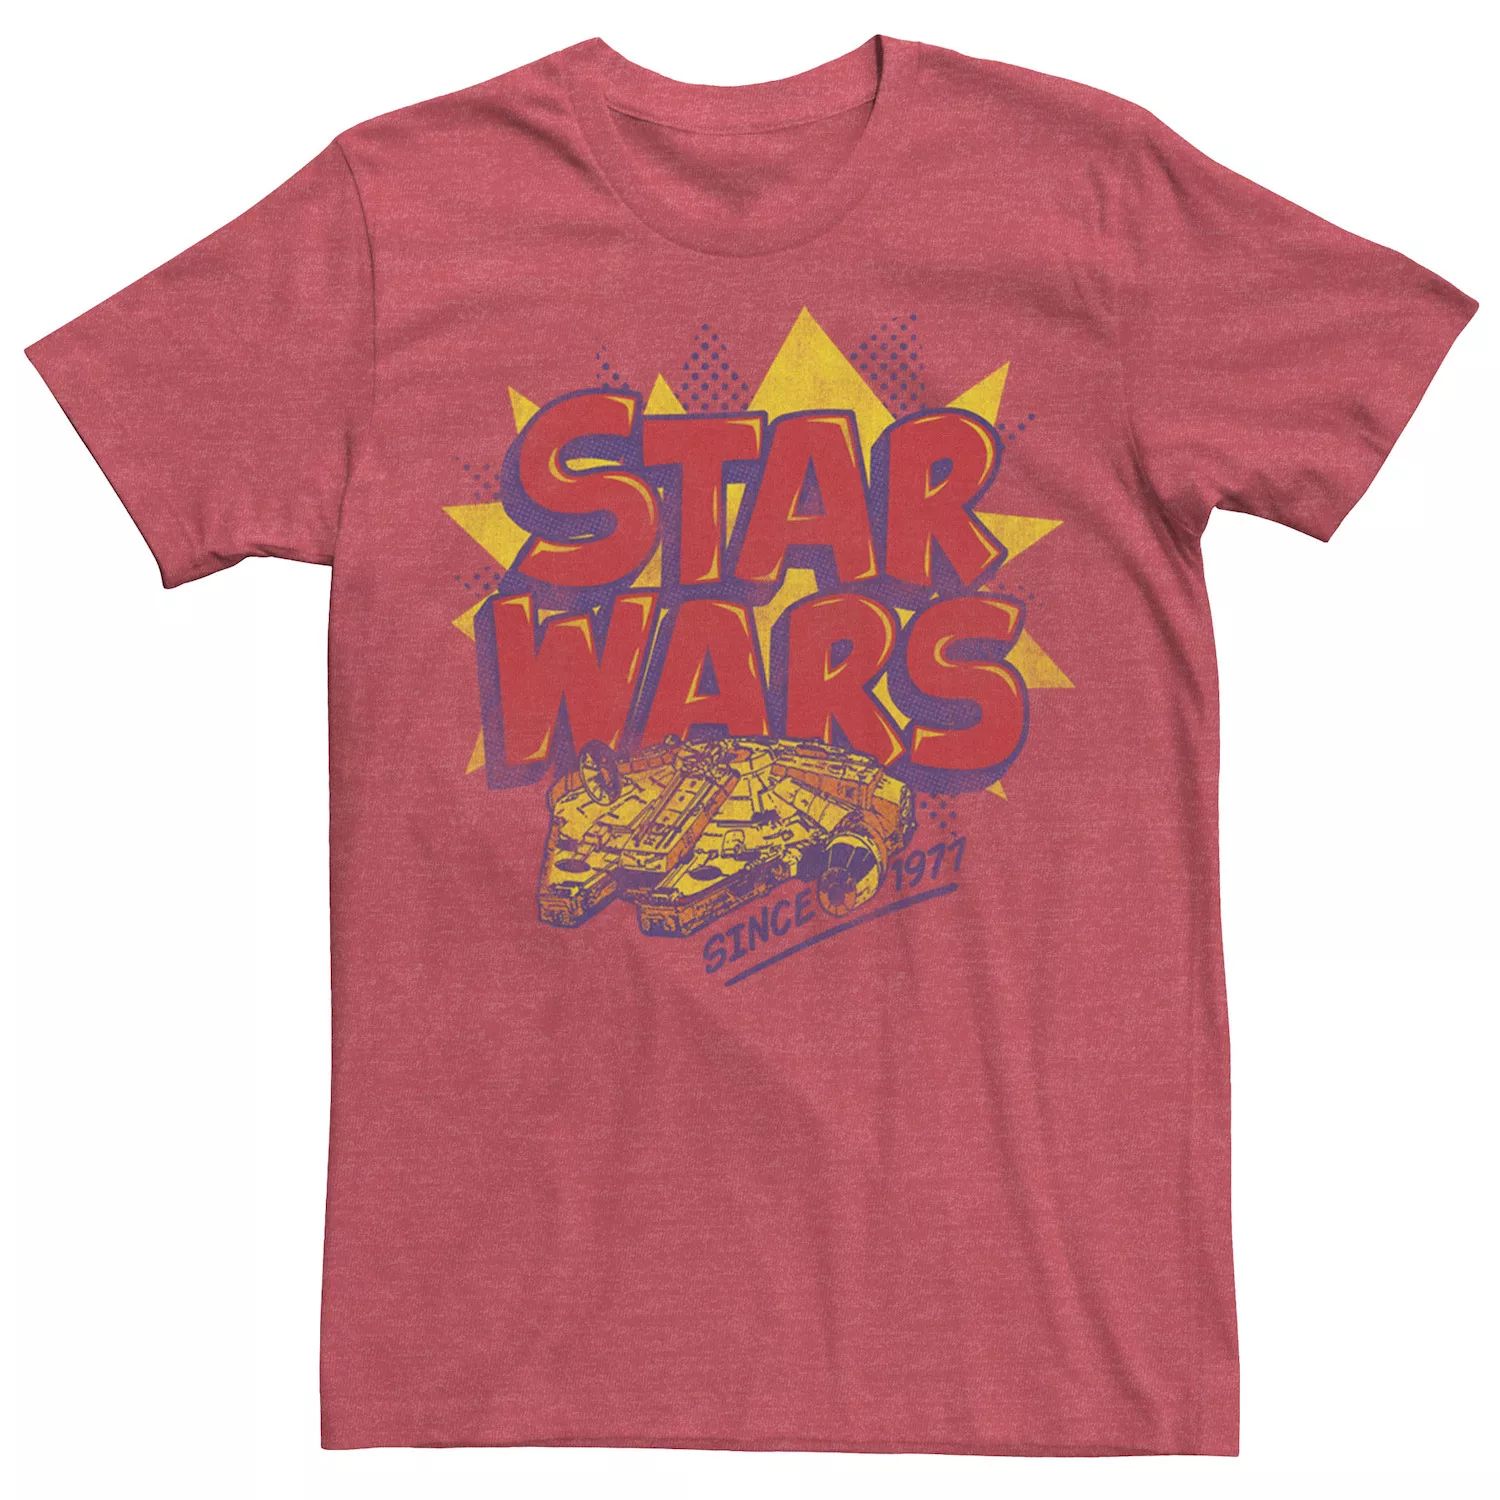 Мужская футболка с логотипом комиксов «Звездные войны: Сокол тысячелетия» Star Wars мужская футболка с картами таро сокол тысячелетия star wars